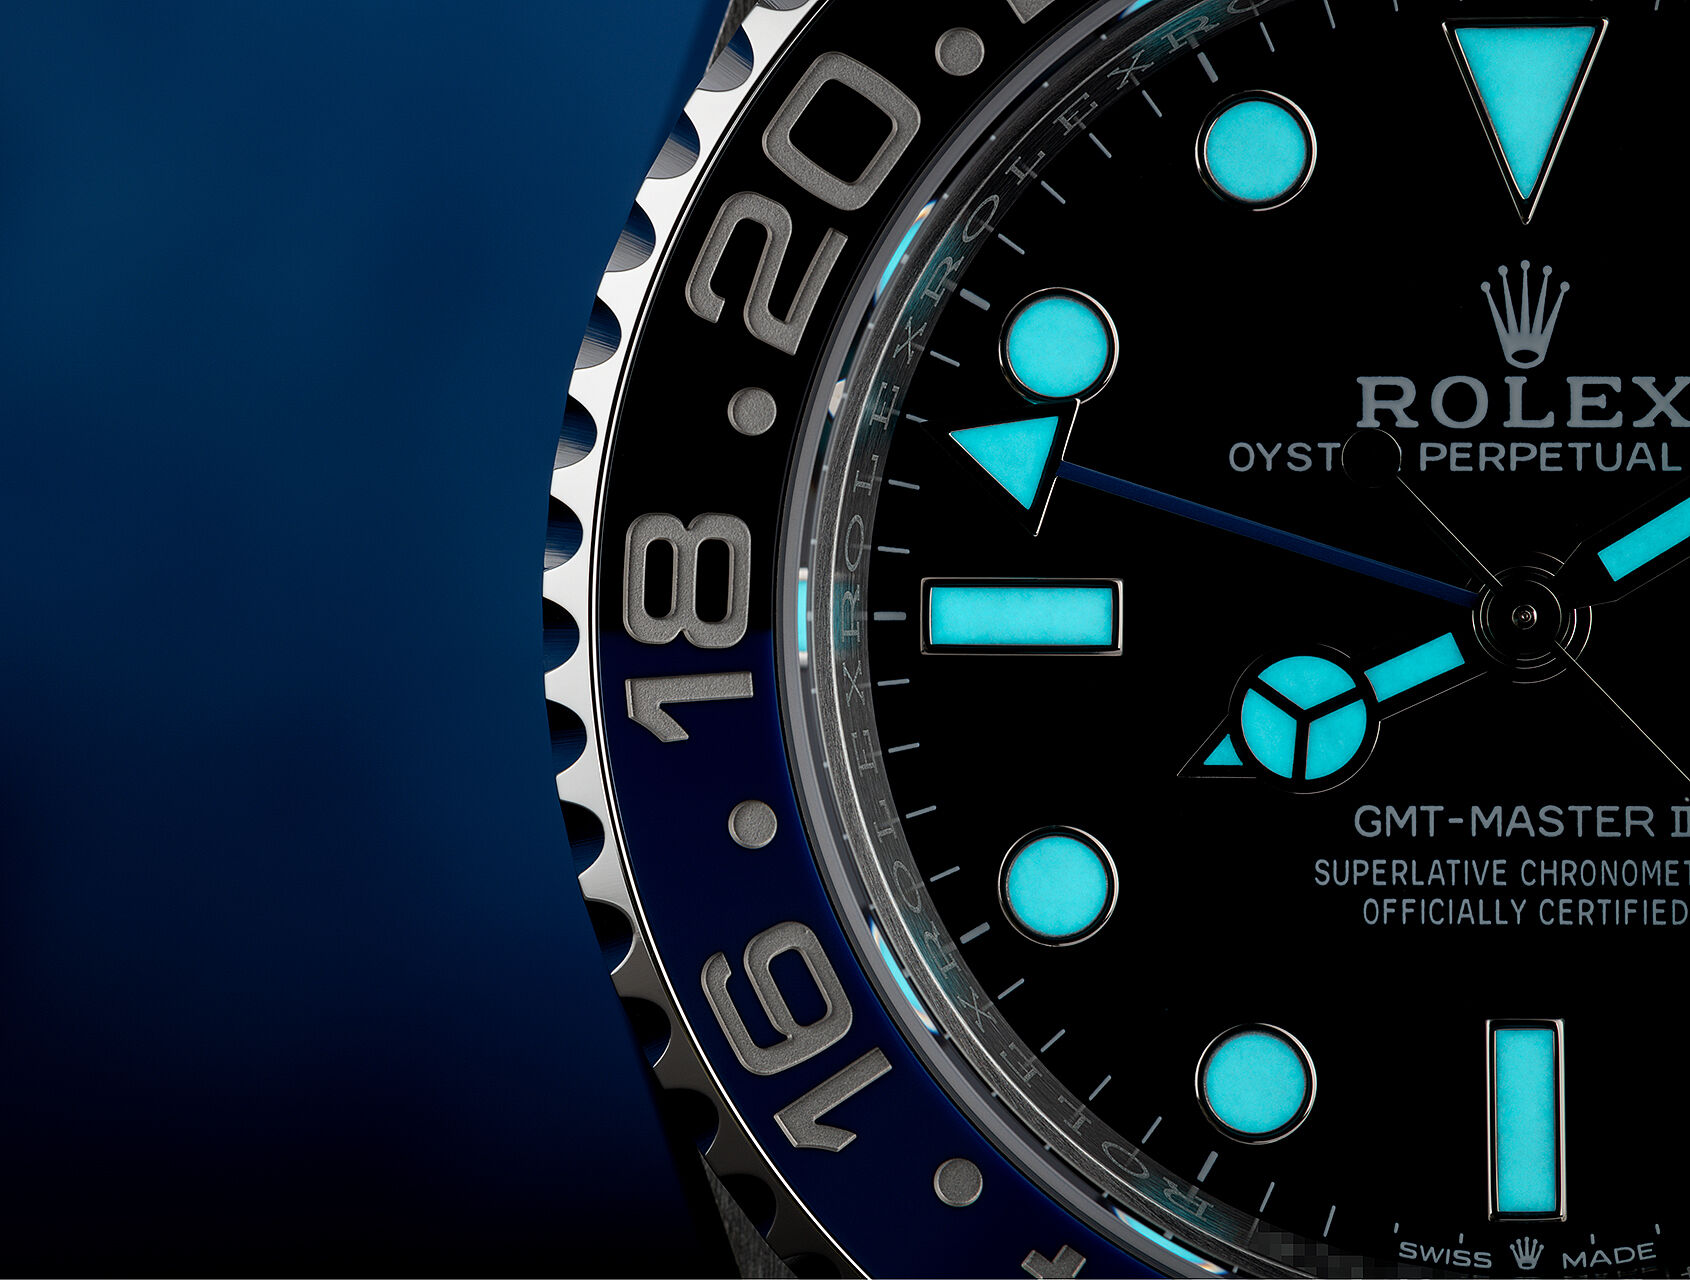 ref 126710BLNR | Rolex Warranty to 2027 | Rolex GMT-Master II